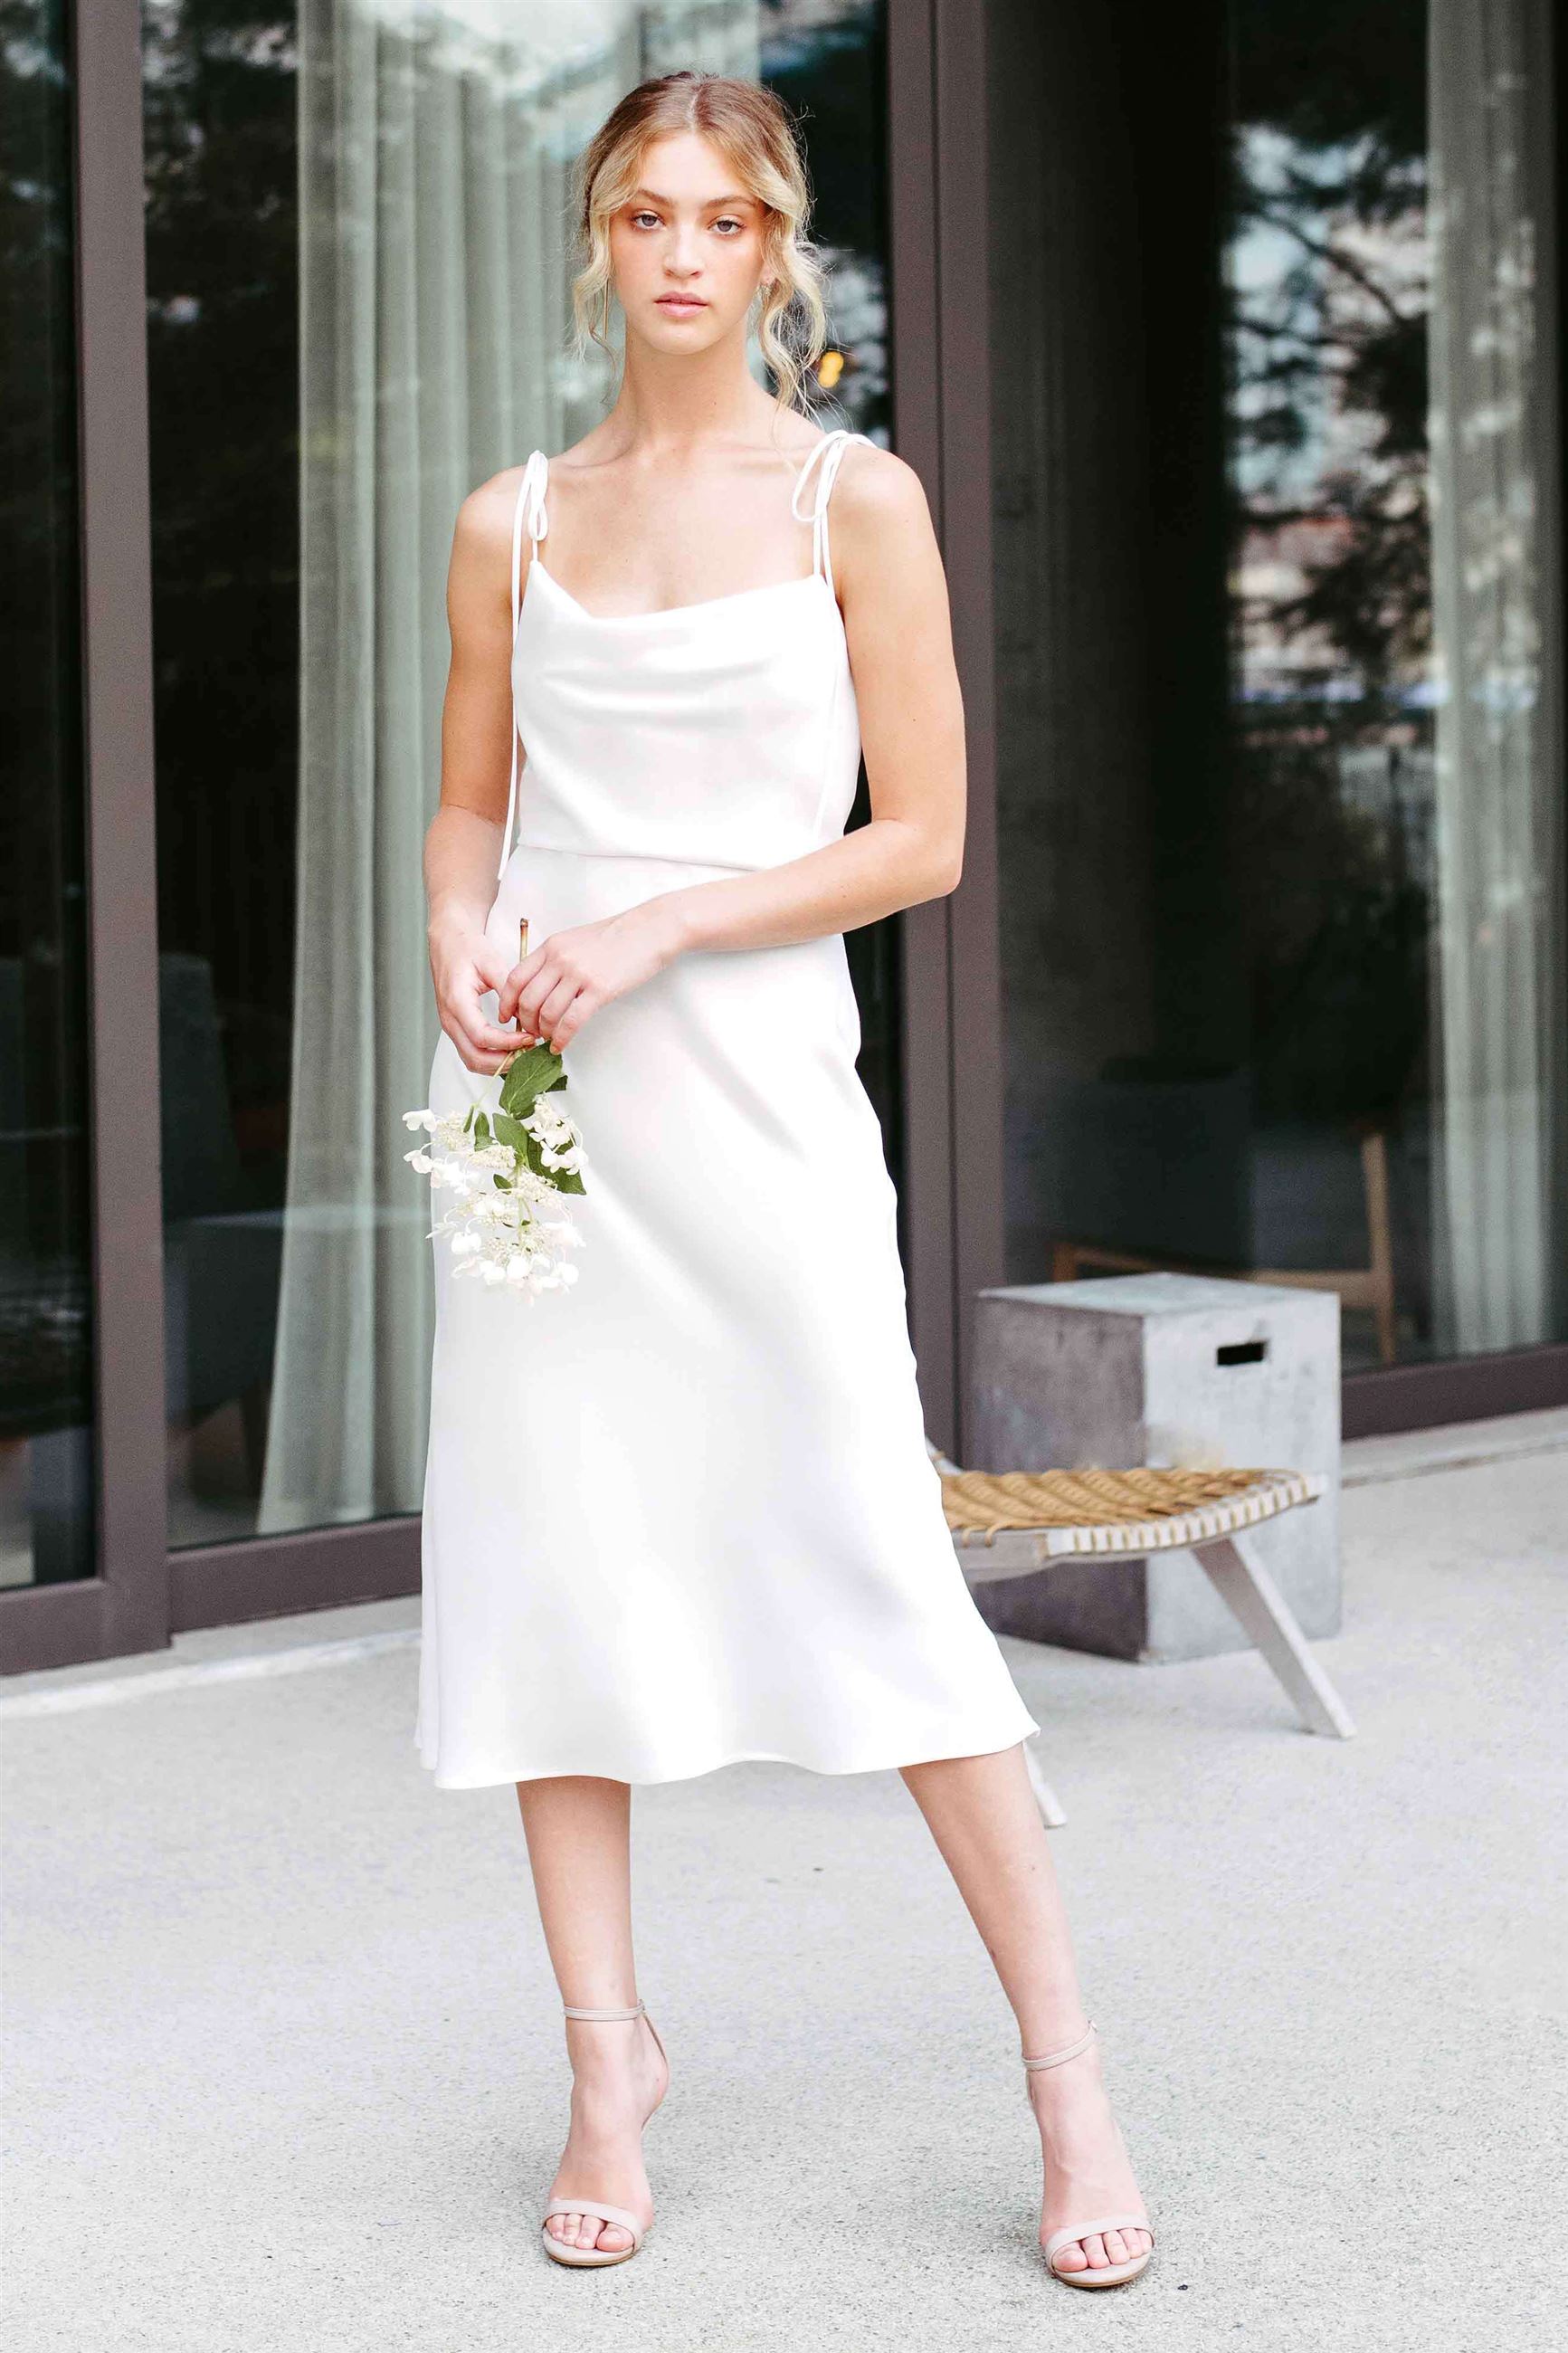 Bride wearing white slip dress with cowl neckline